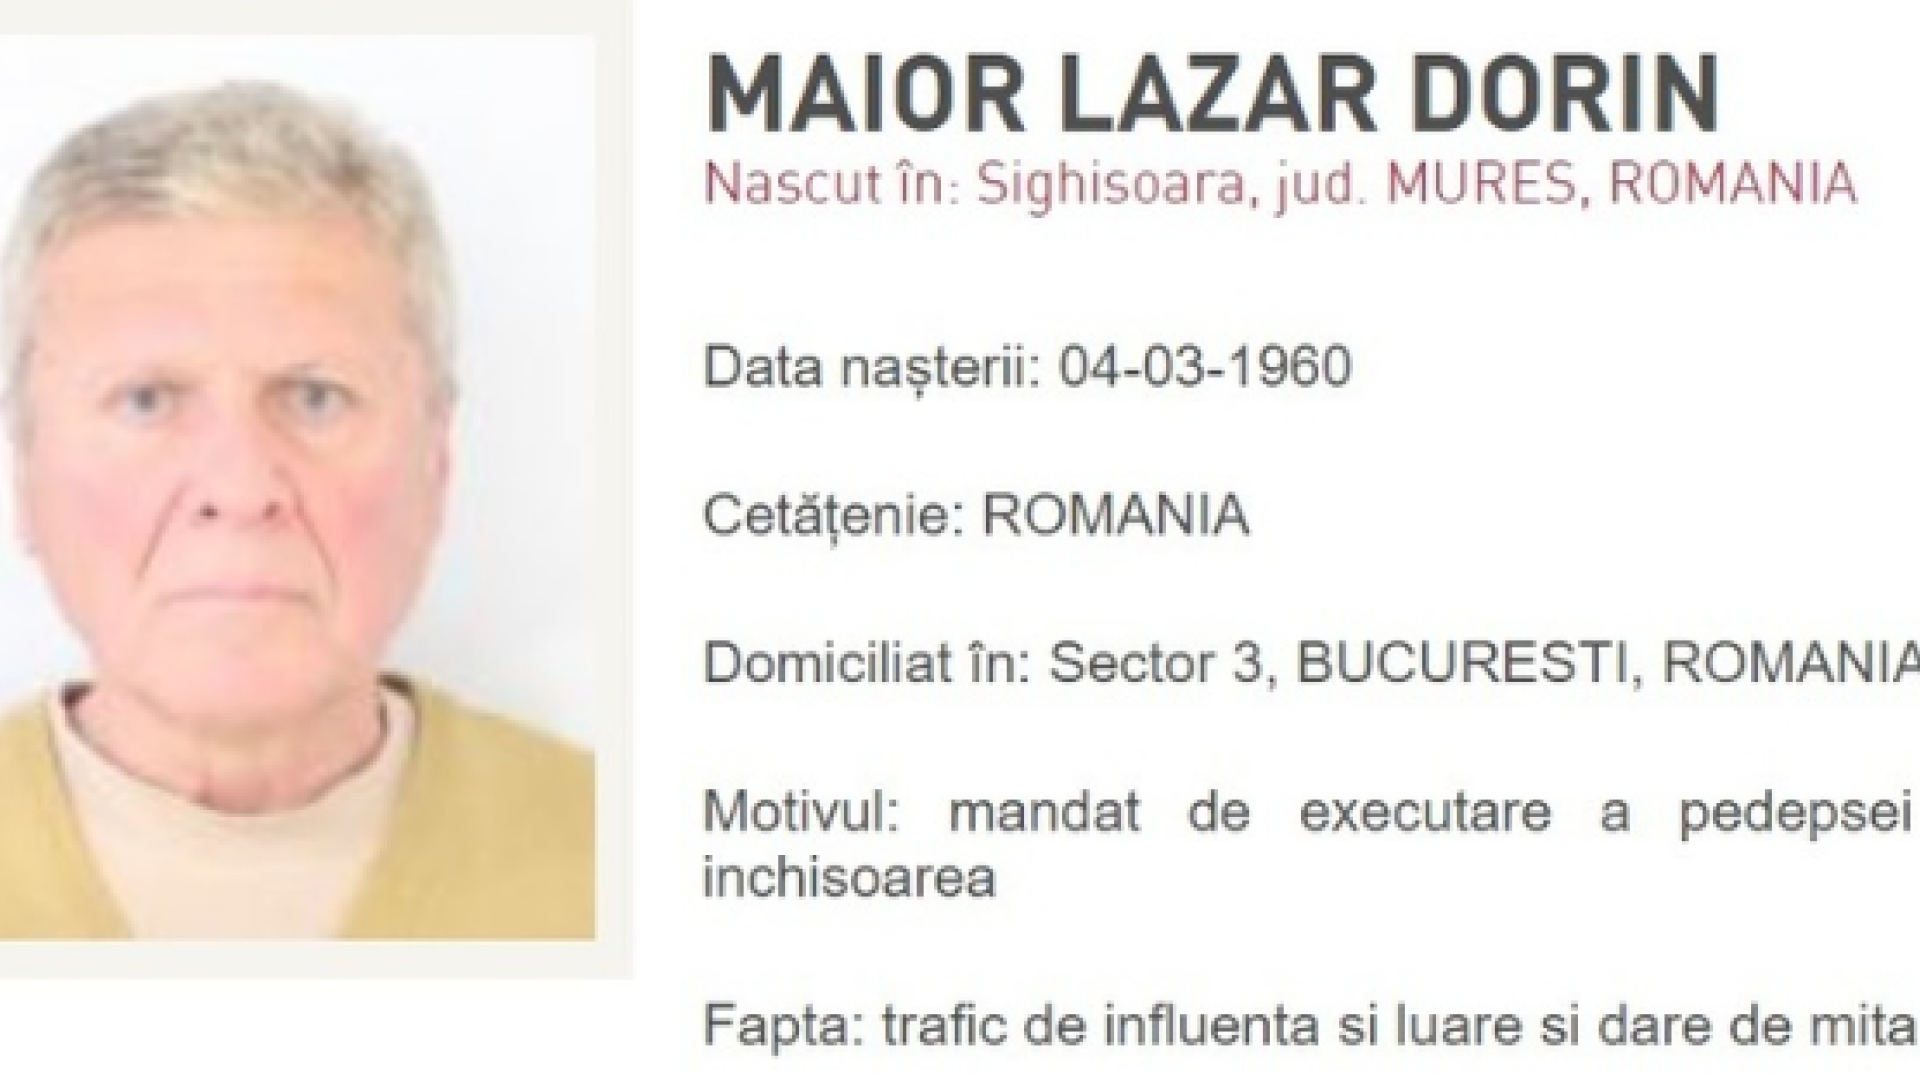 Maior Lazăr Dorin